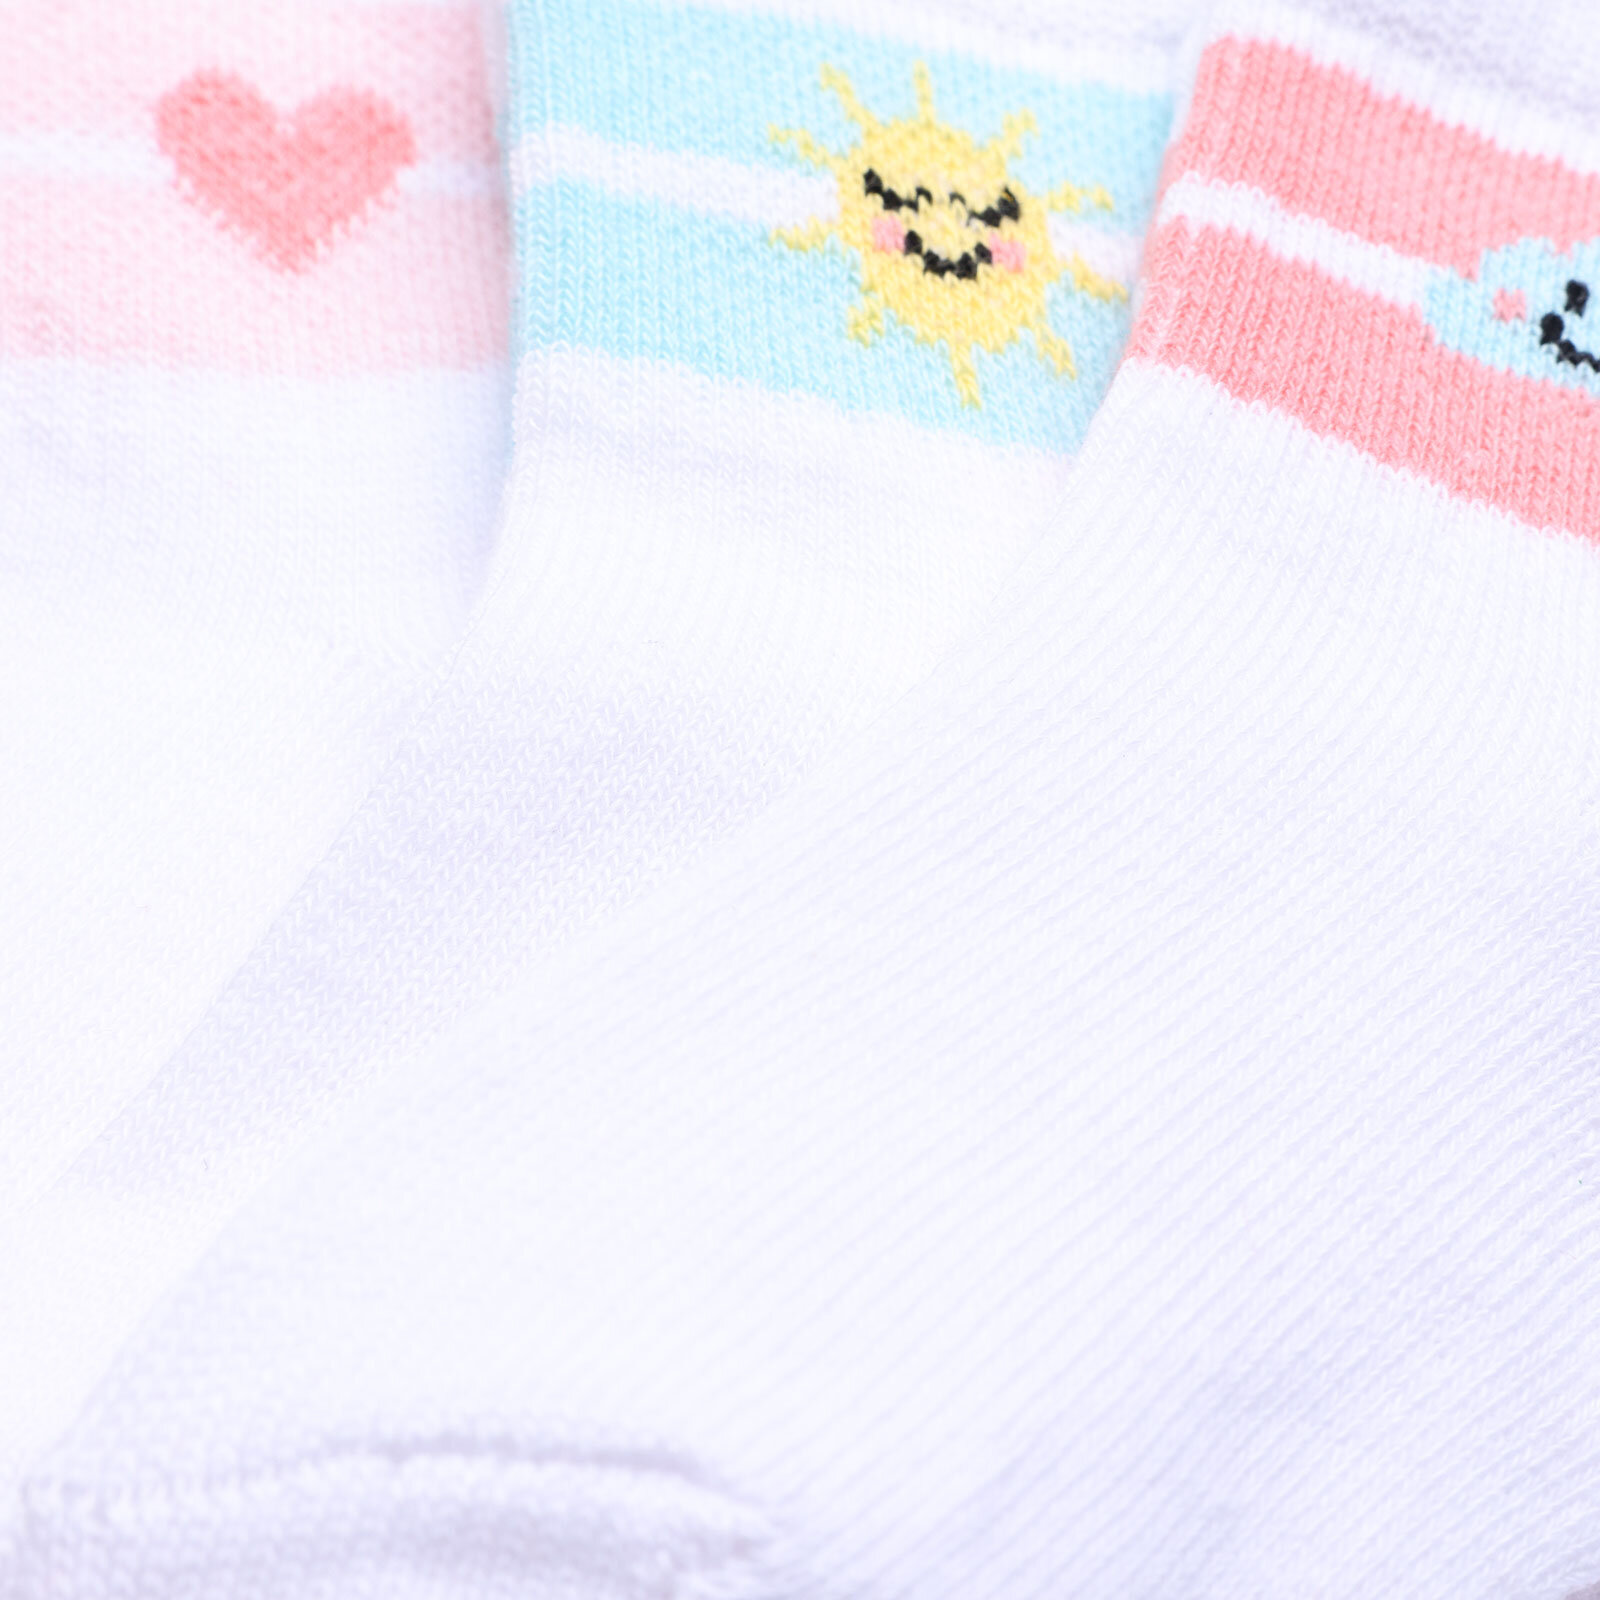 Albio Çizgili Desenli 3lü Soket Çorap Kız Bebek